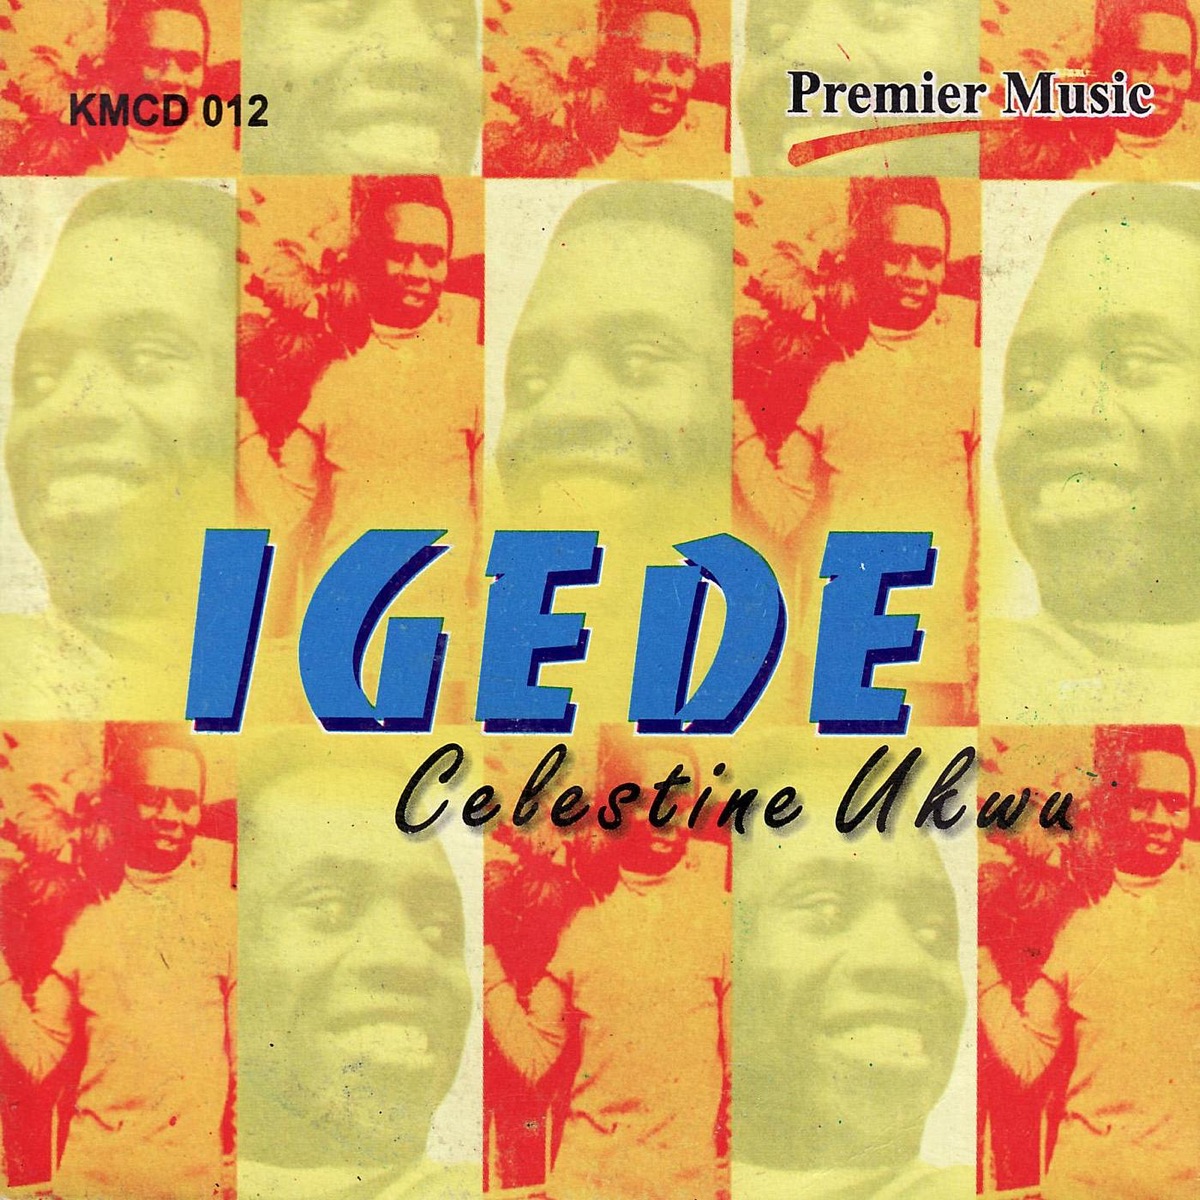 Celestine Ukwu - Ife Si Na Chi